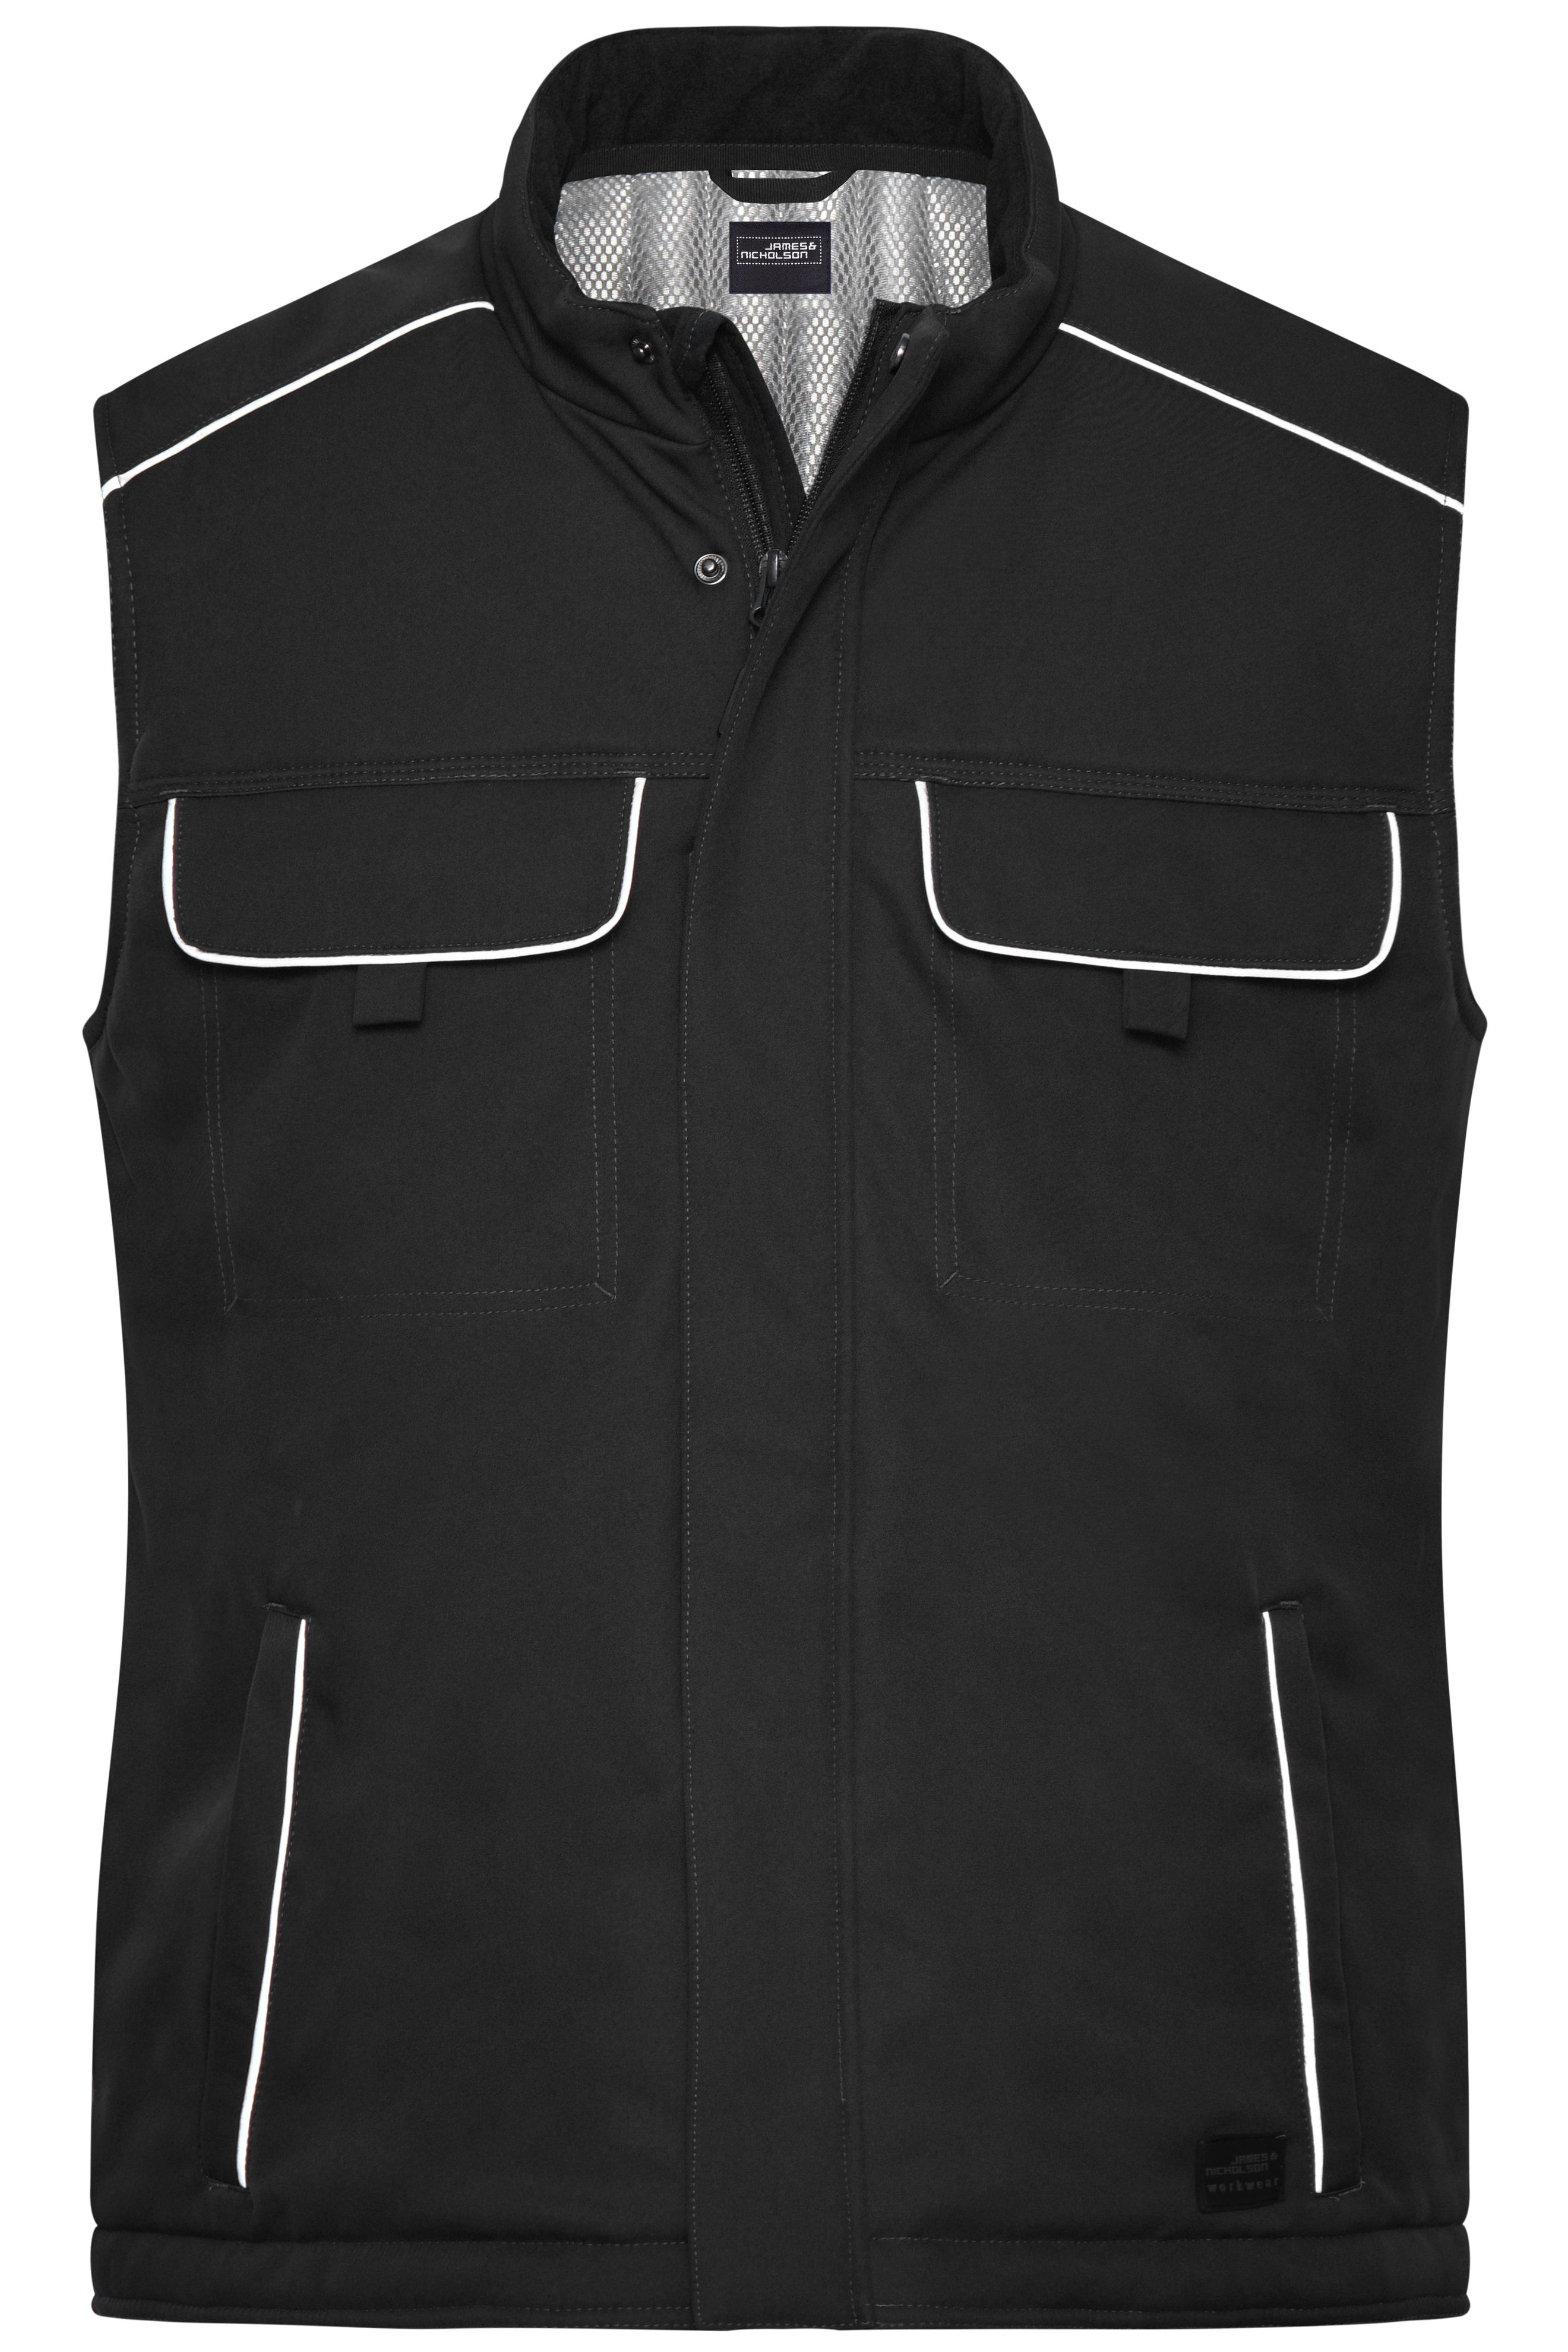 Workwear Softshell Padded Vest - SOLID - JN885 Professionelle Softshellweste mit warmem Innenfutter und hochwertigen Details im cleanen Look